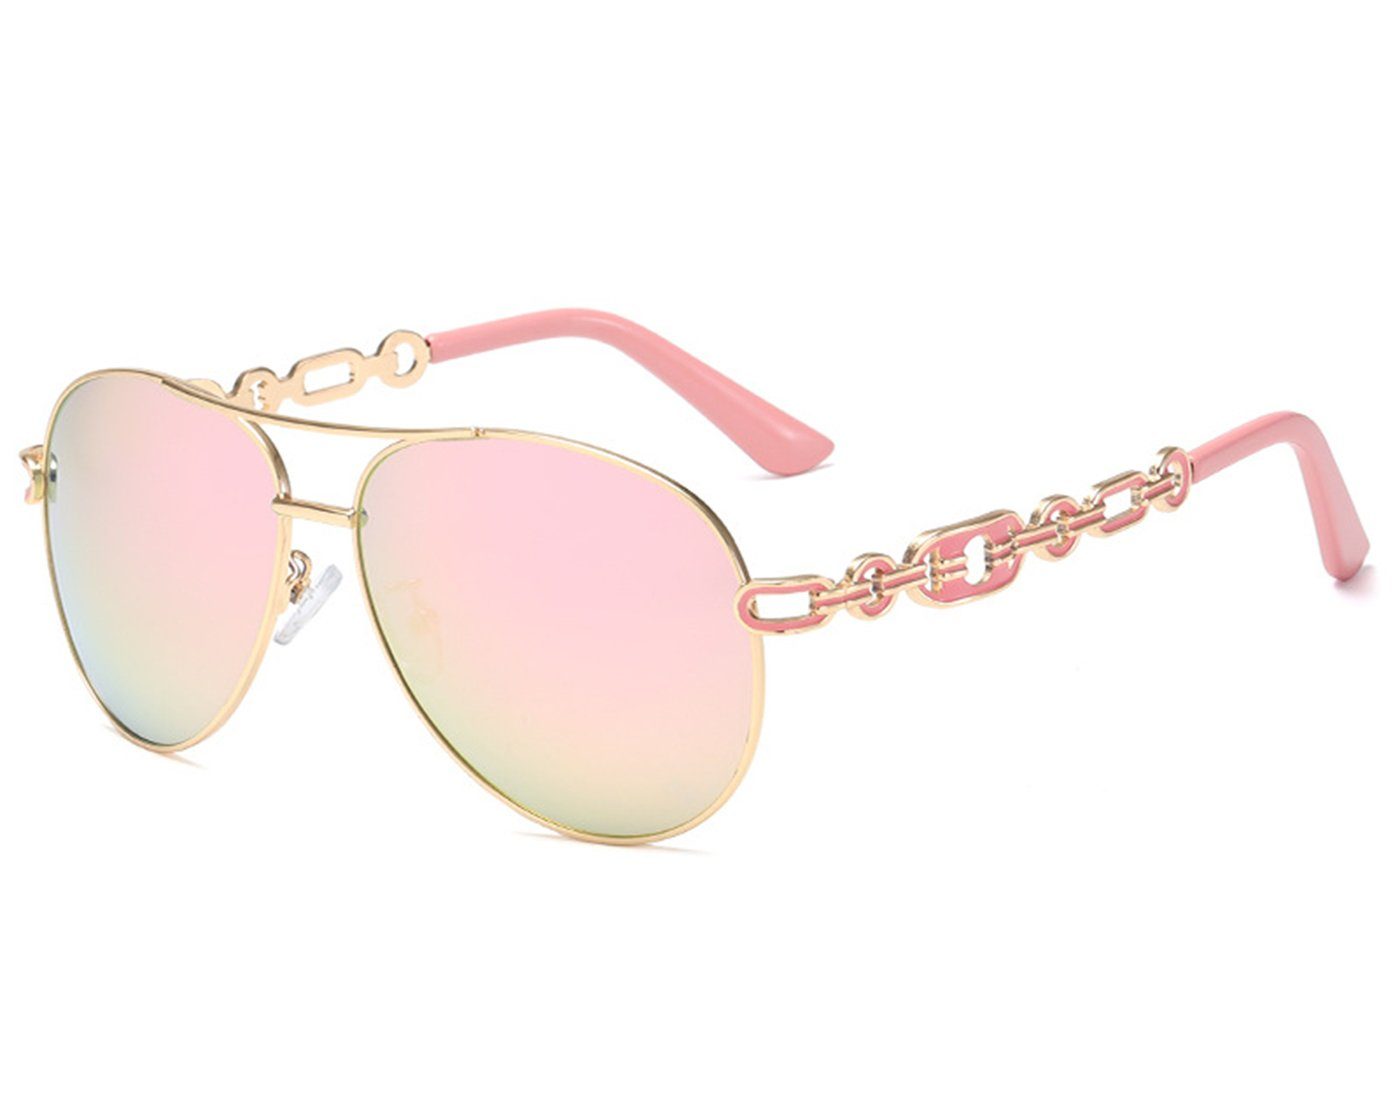 Haiaveng Sonnenbrille Verspiegelte Sonnenbrille Damen UV400 Brille Vintage Pilotenbrille Retro Sunglasses Damen pink